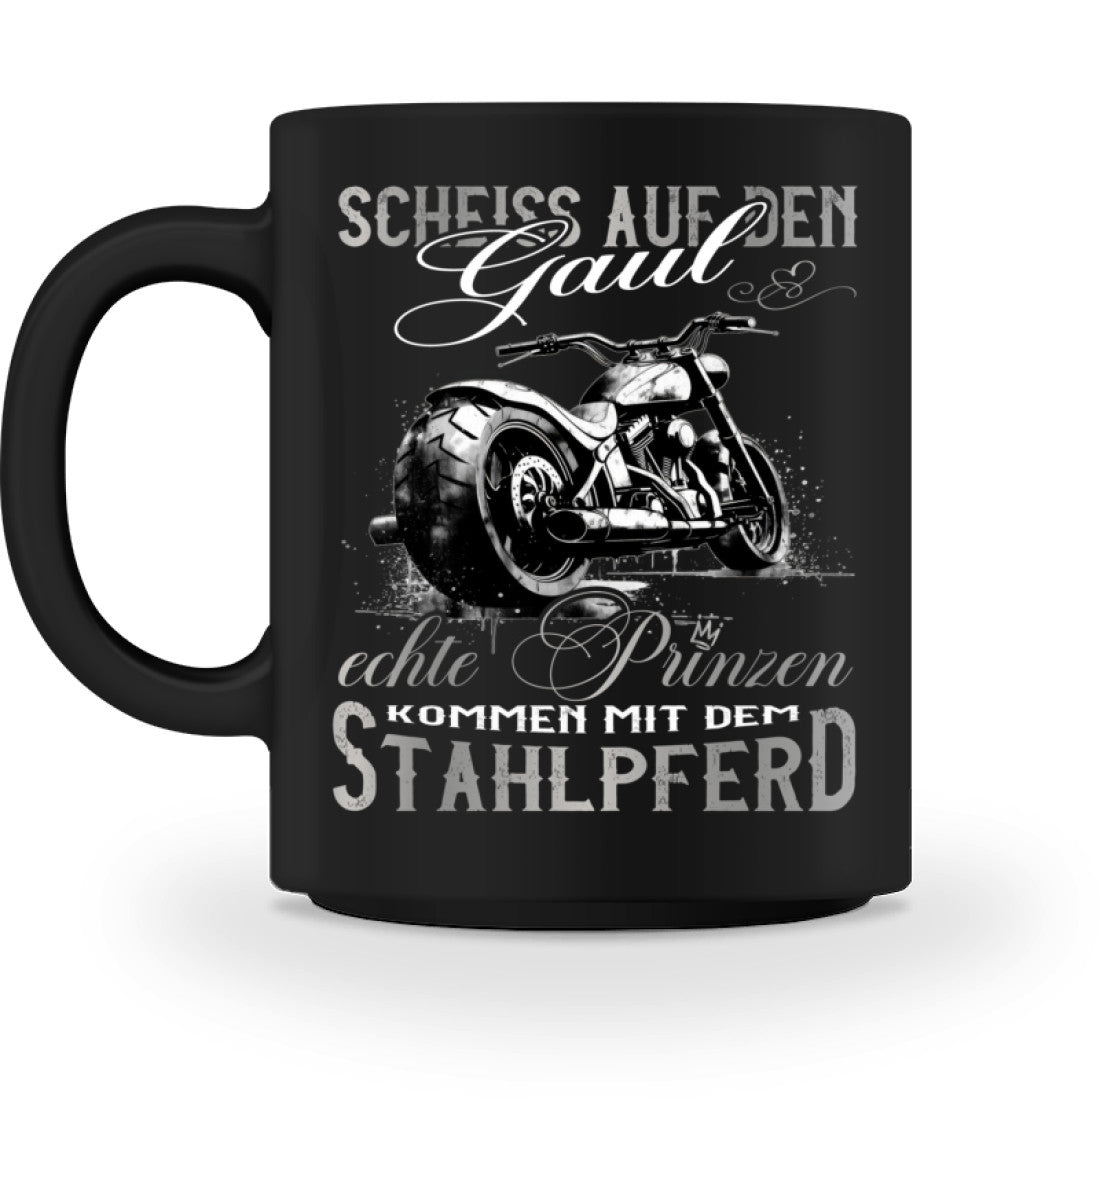 Eine Bikerin Tasse für Motorradfahrerinnen, von Wingbikers, mit dem beidseitigen Aufdruck, Scheiß auf den Gaul, echte Prinzen kommen mit dem Stahlpferd, in schwarz.